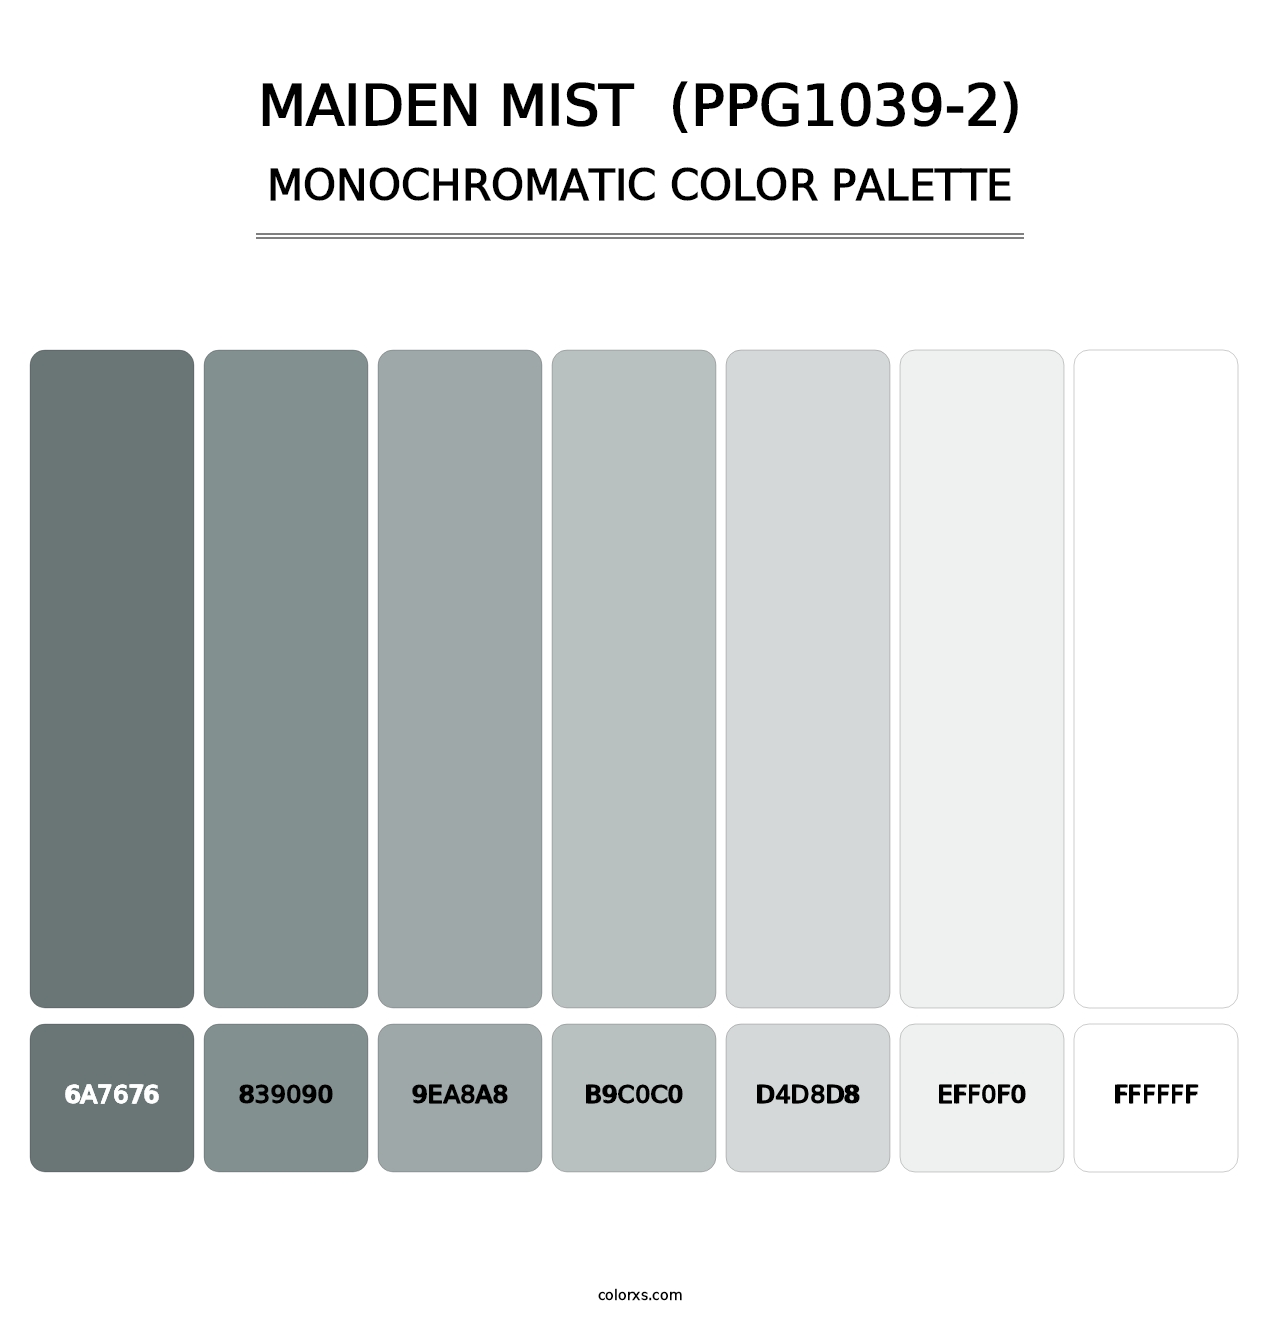 Maiden Mist  (PPG1039-2) - Monochromatic Color Palette